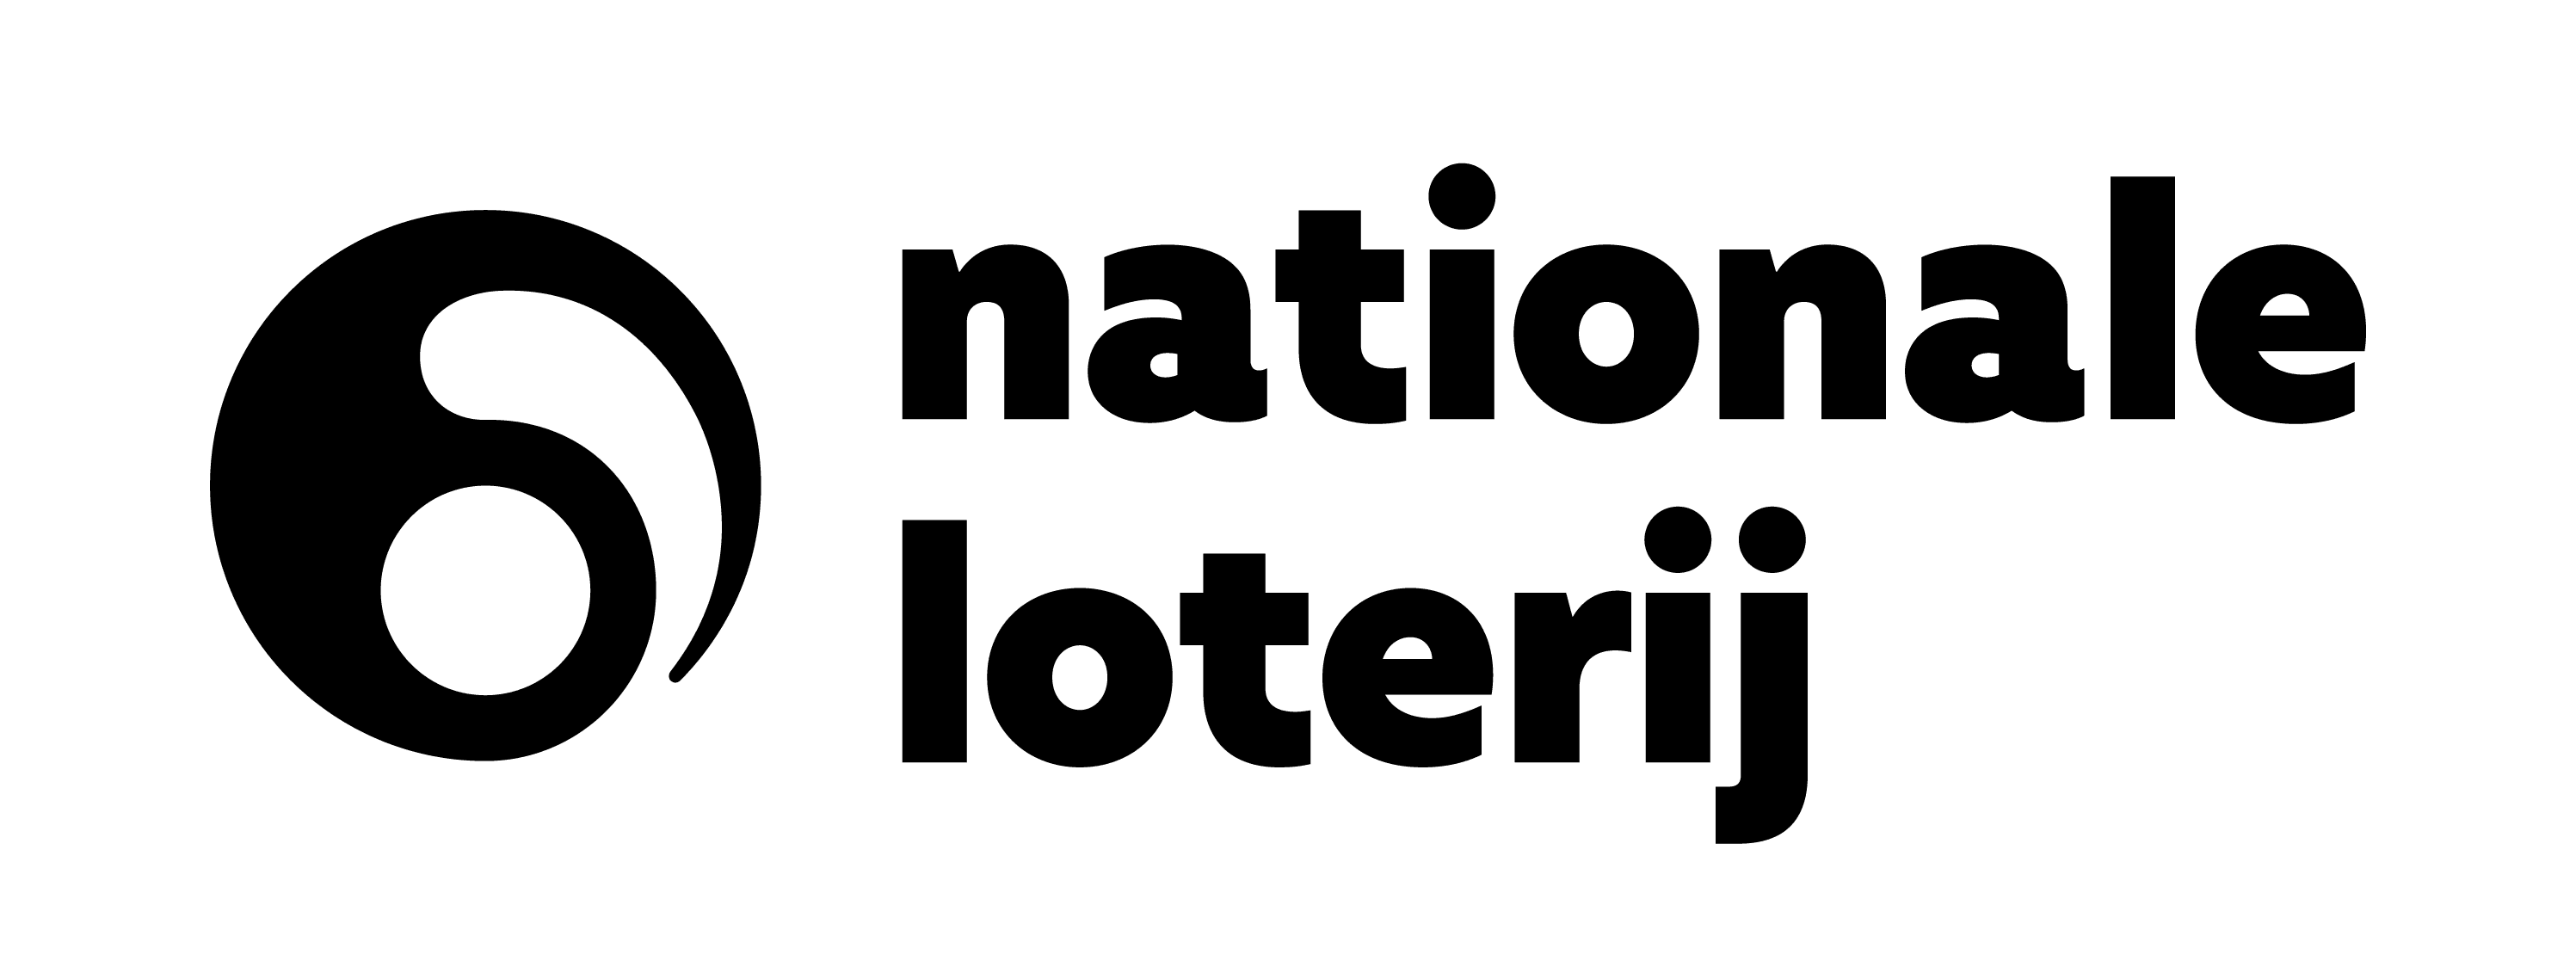 logo_loterie_horizontal_safezone_nl_2l_black